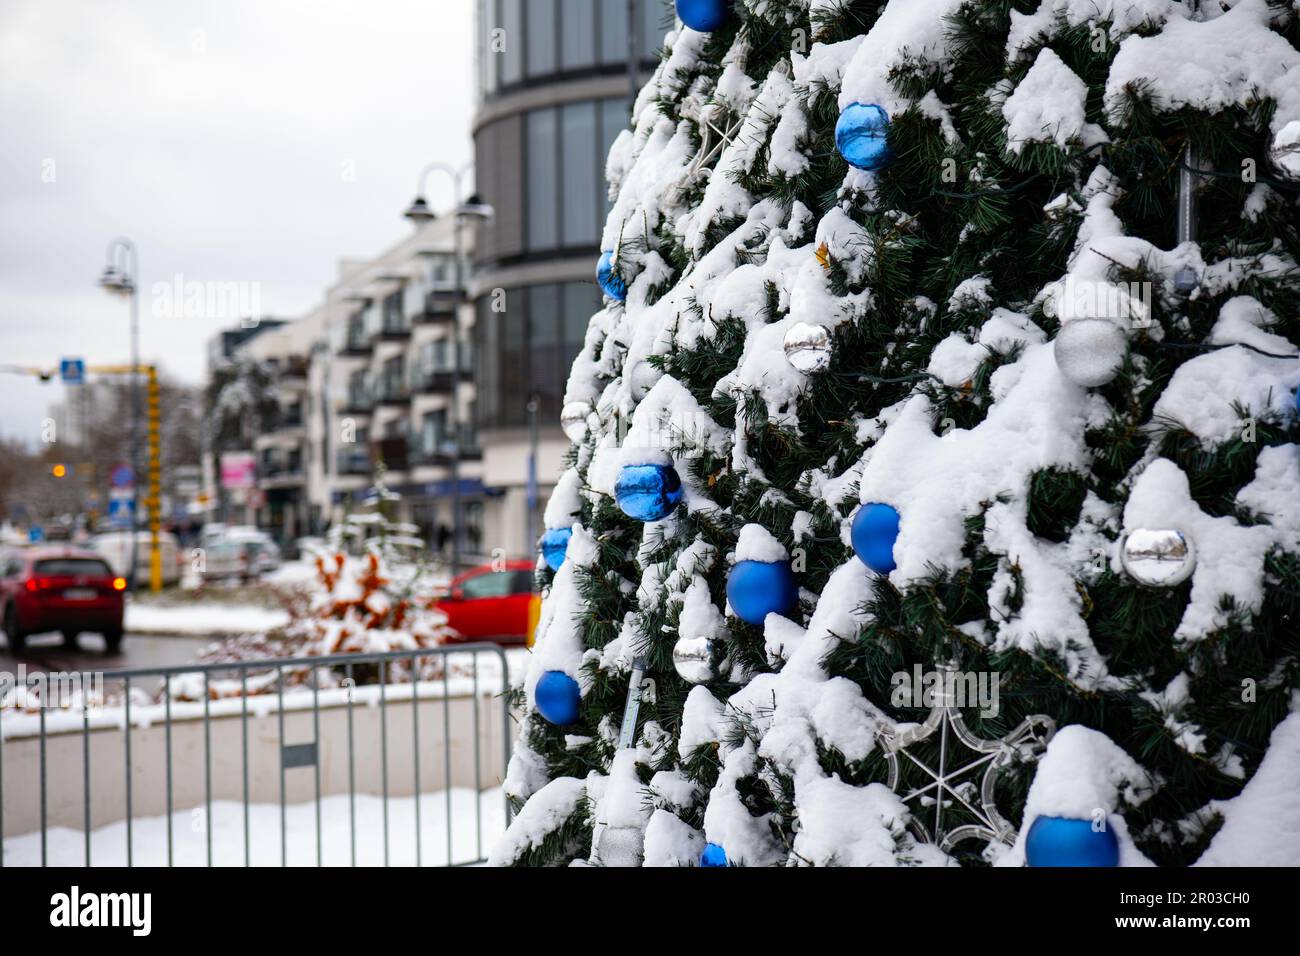 Eine lebhafte festliche Stadt mit dekoriertem Weihnachtsbaum, geschmückt mit bunten Kugeln und Lichtern Stockfoto